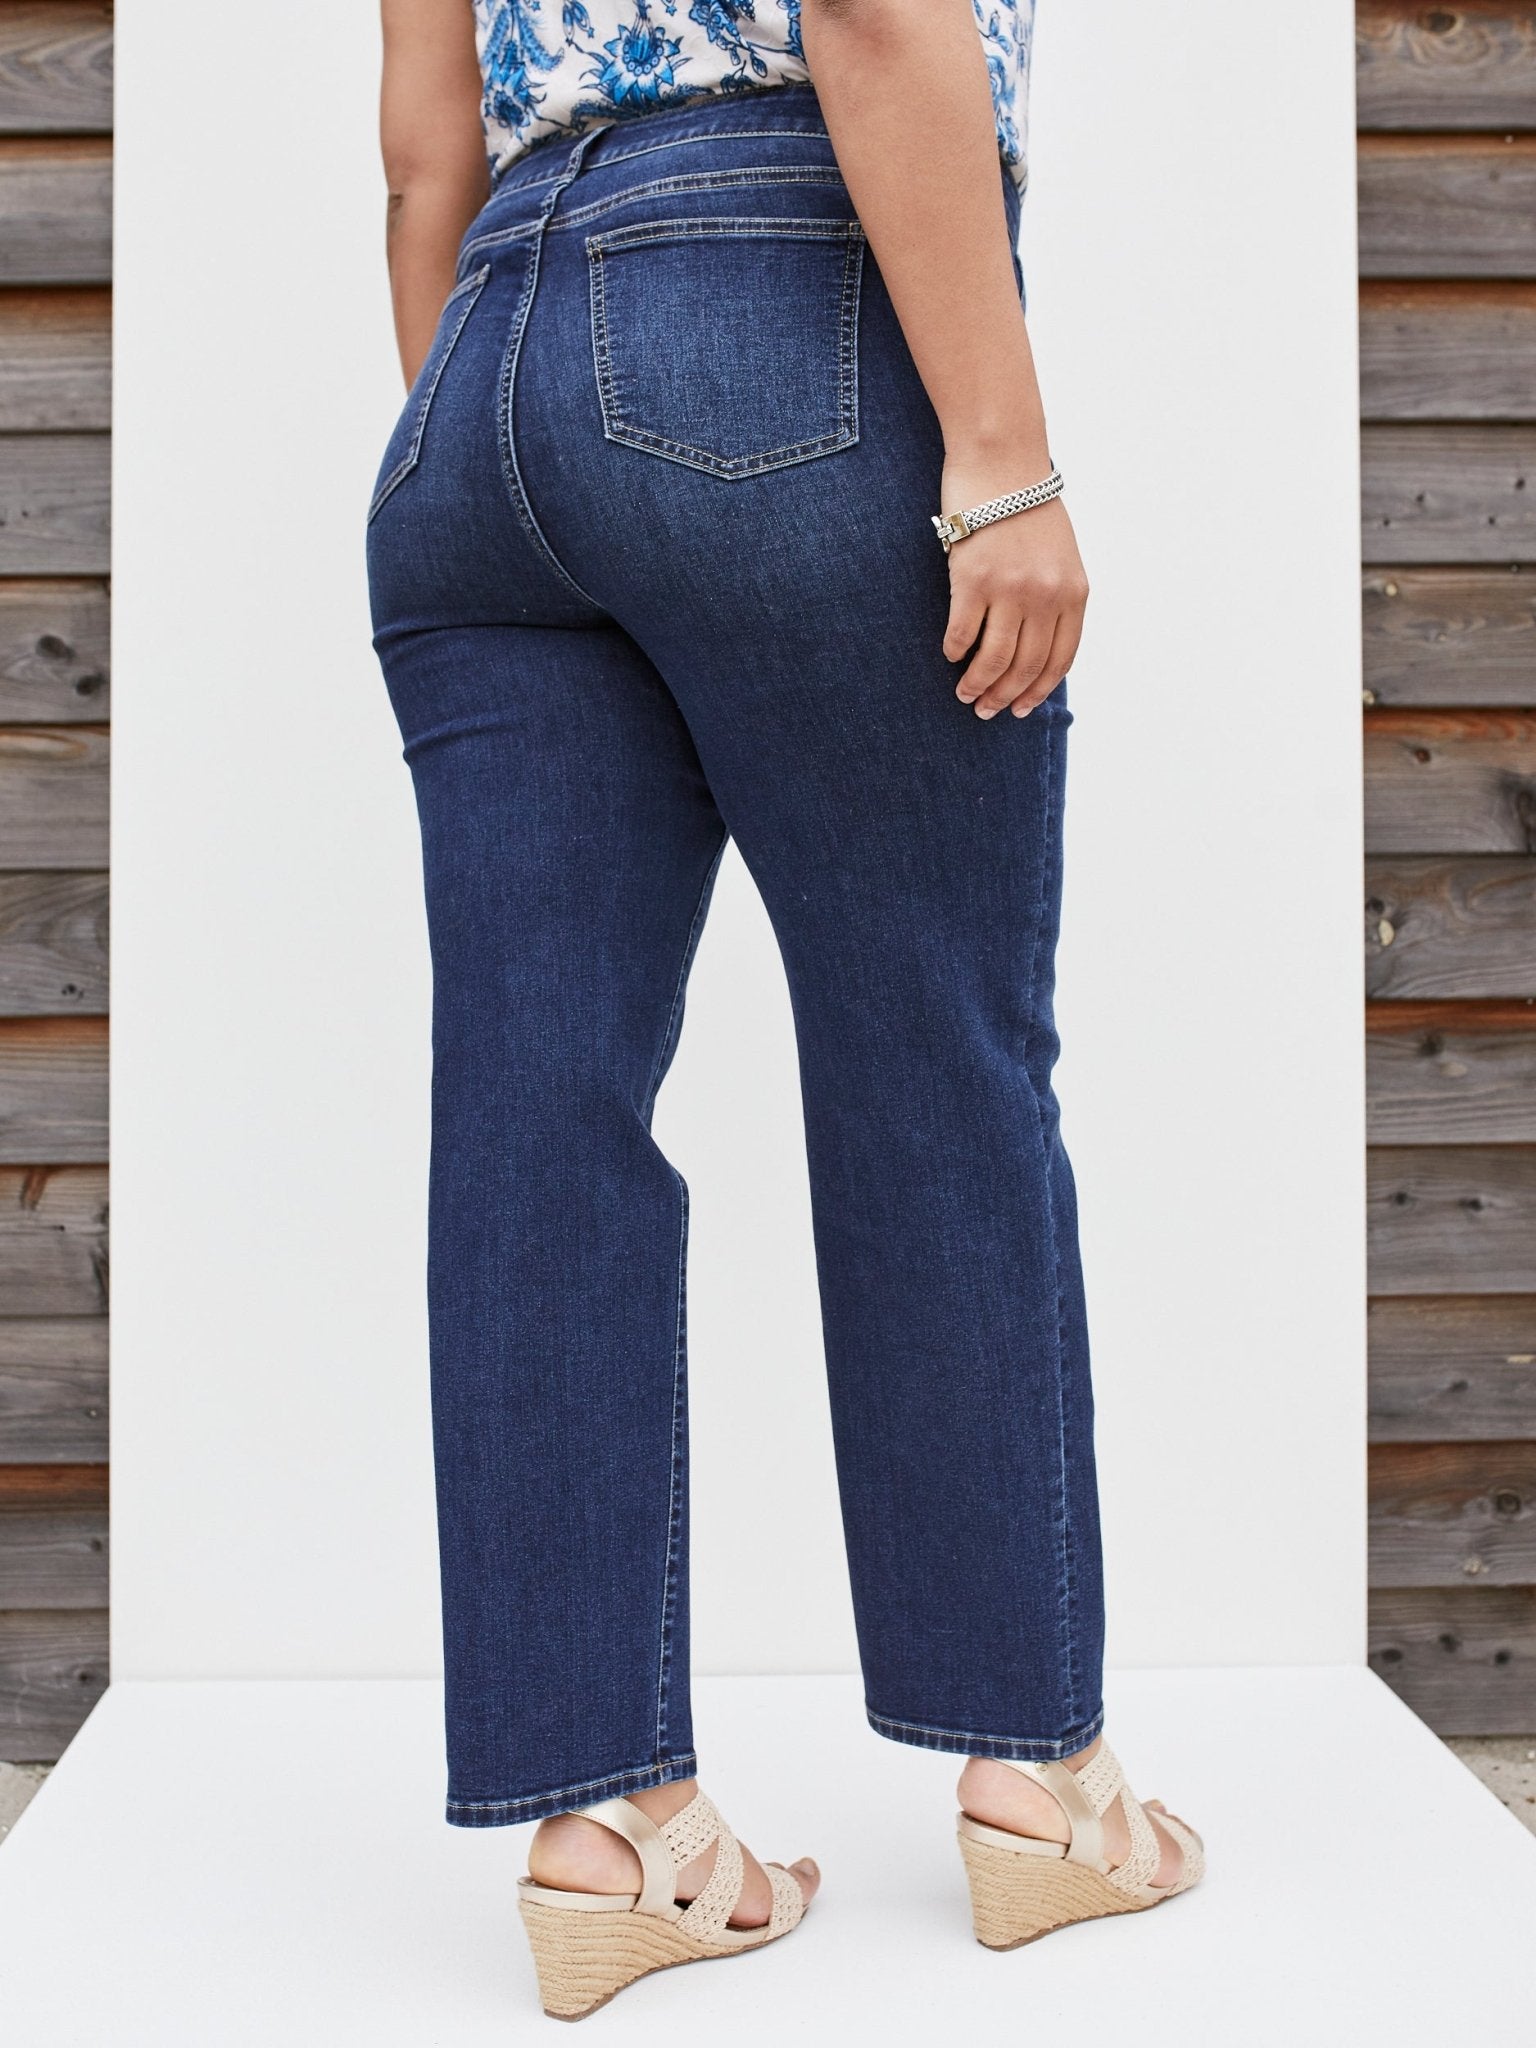 Westport Signature Straight Leg Denim Jeans - Plus - DressbarnClothing